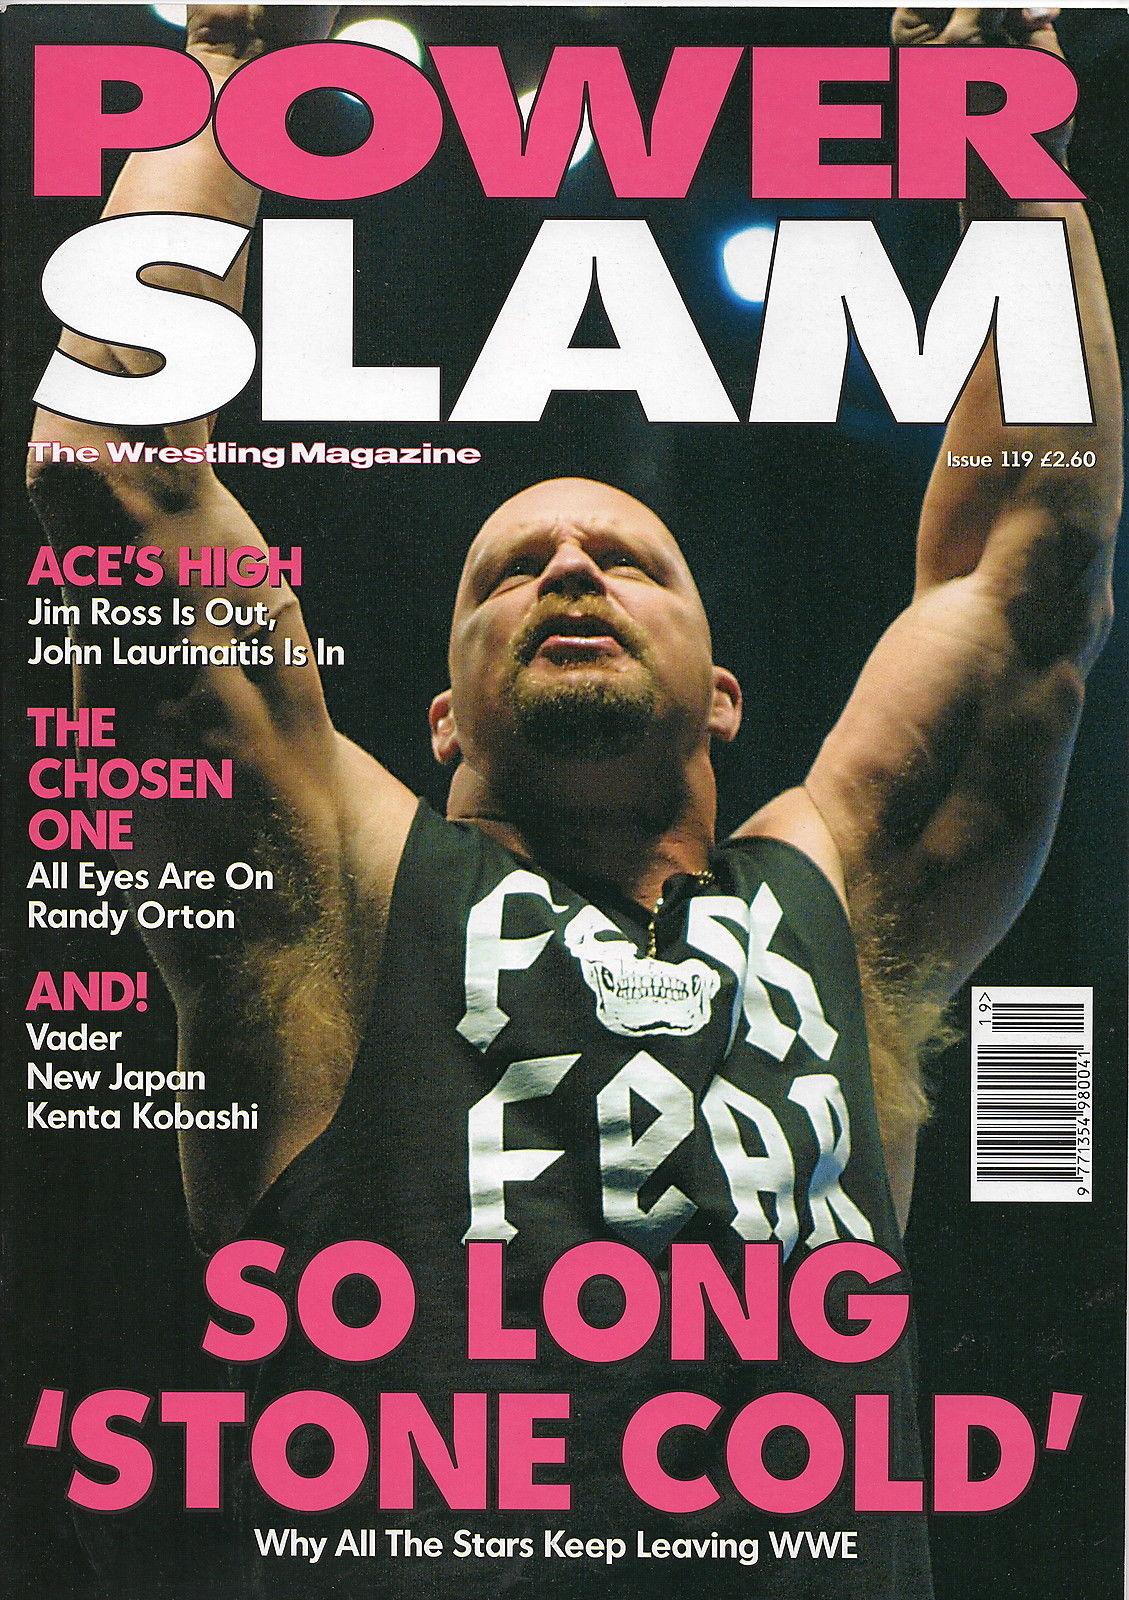 Power Slam Volume 119 June 2004